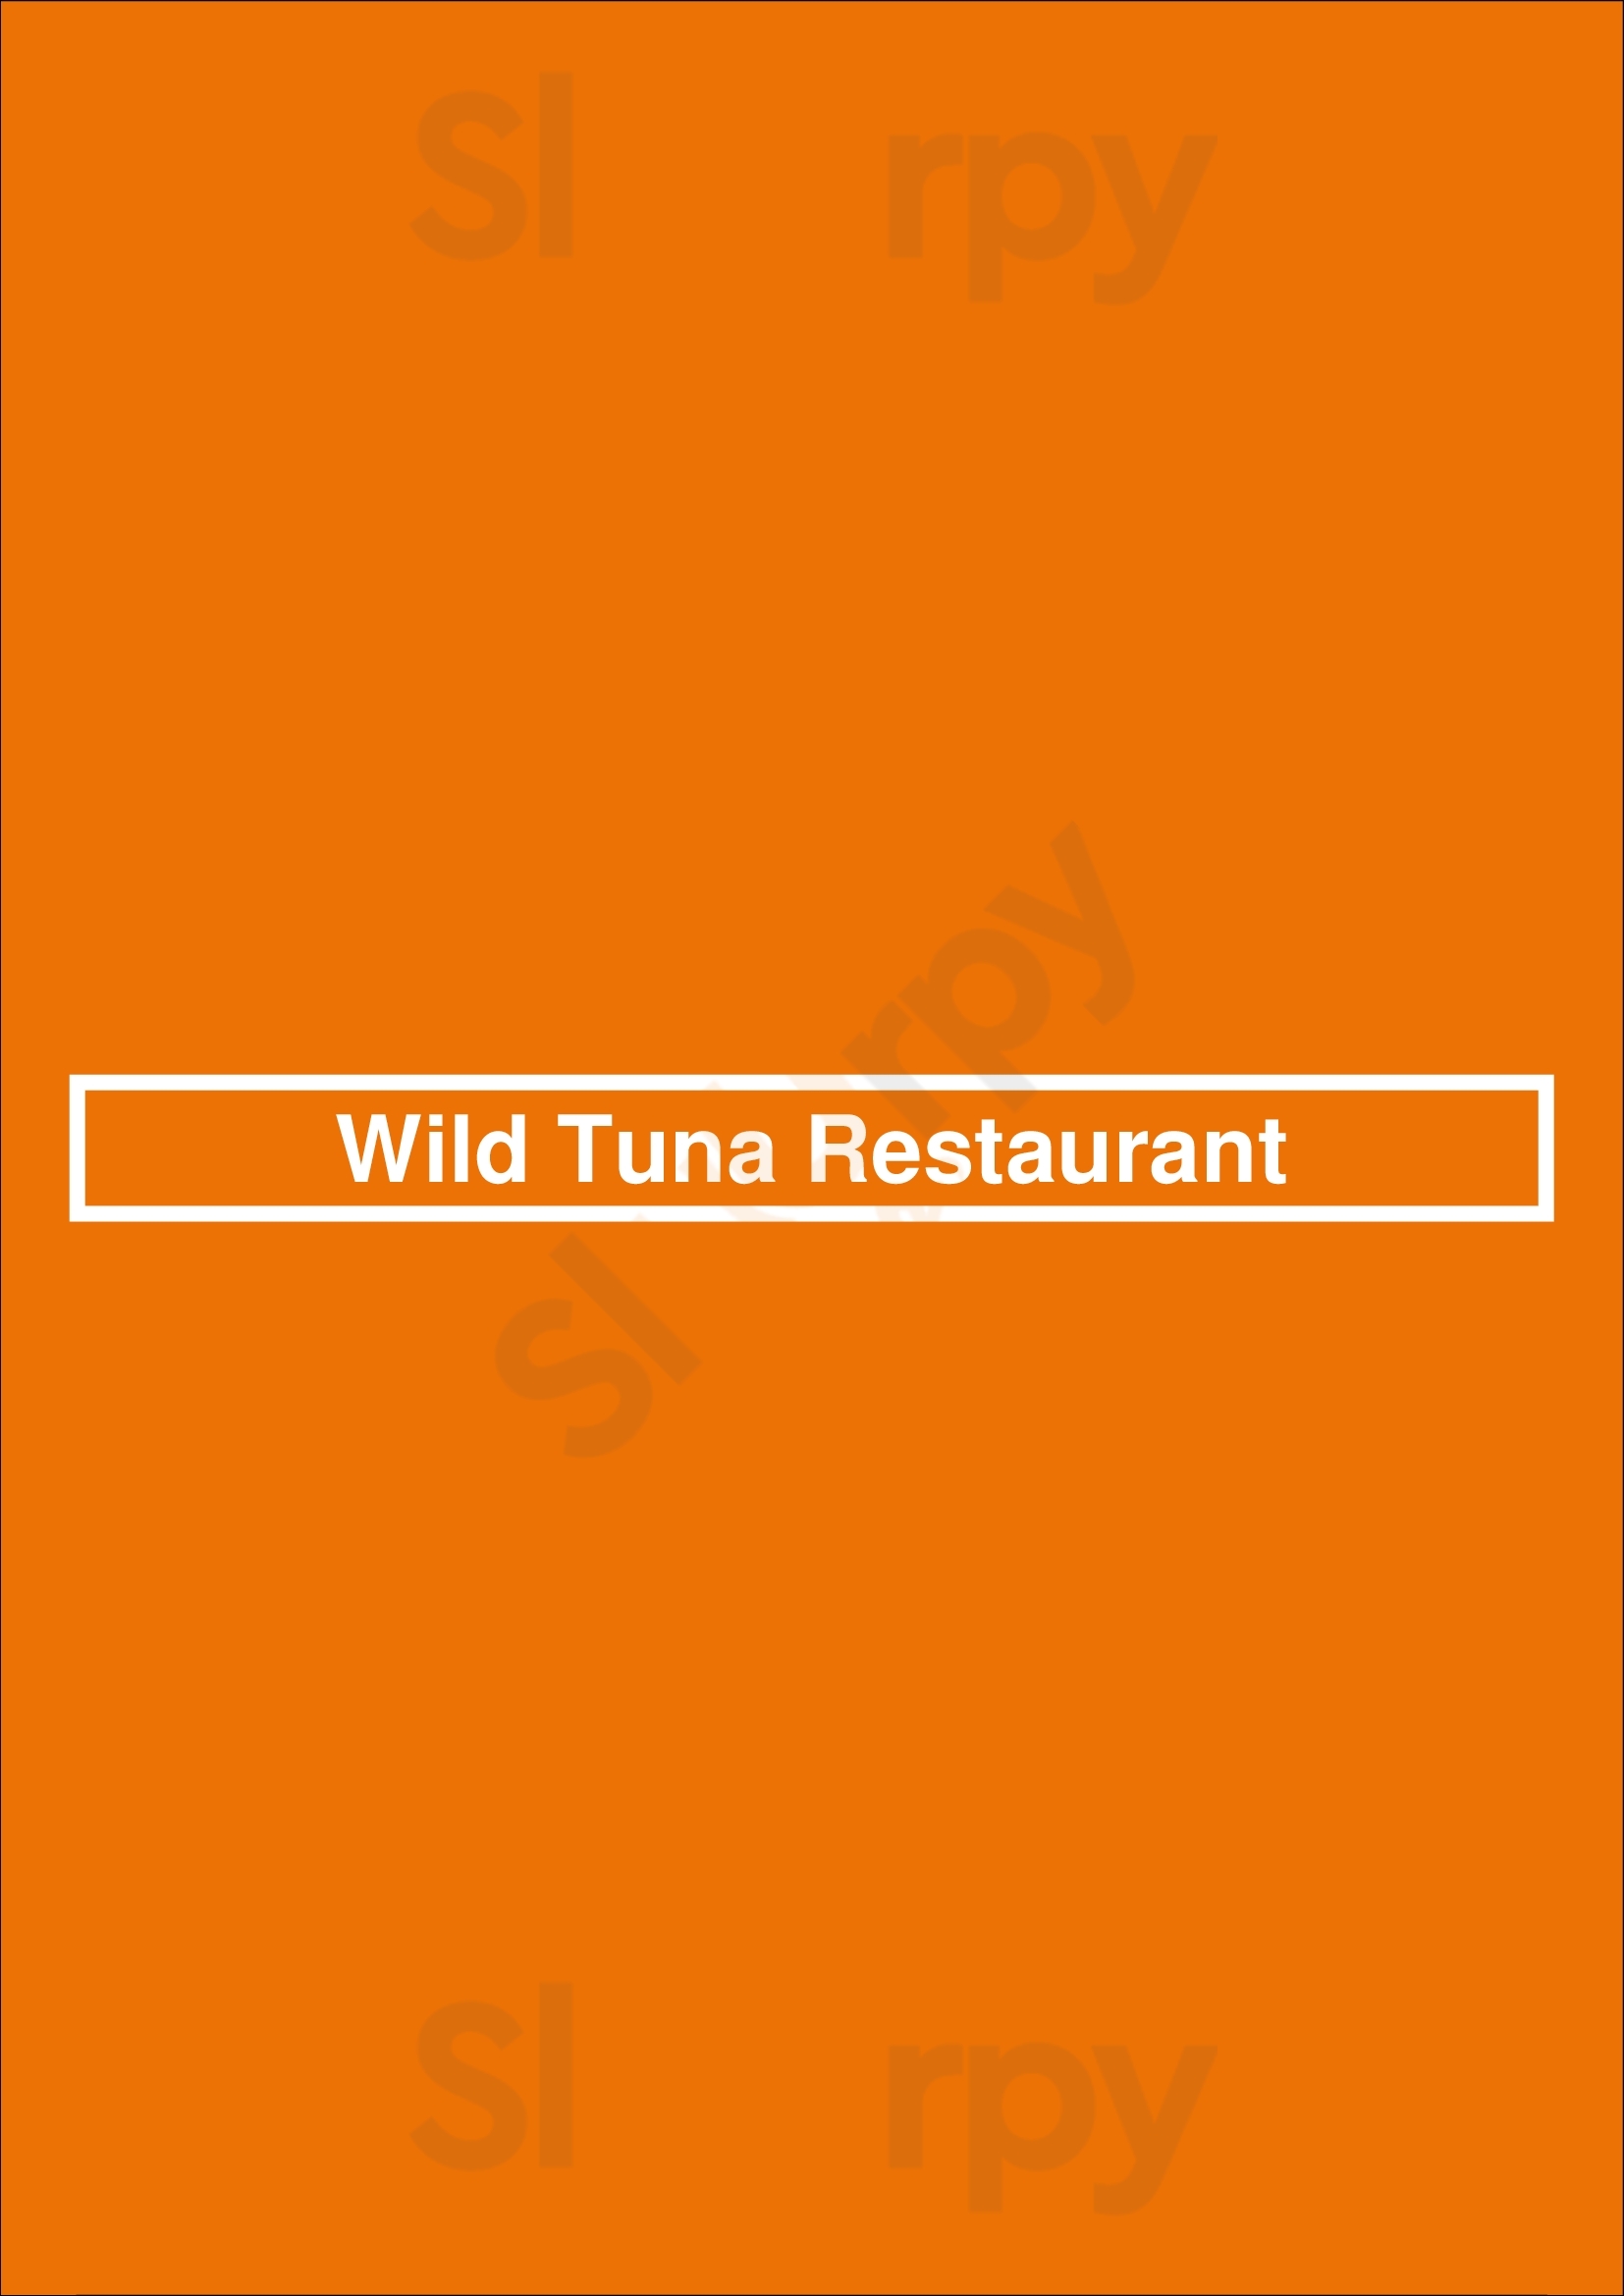 Wild Tuna Restaurant Naperville Menu - 1